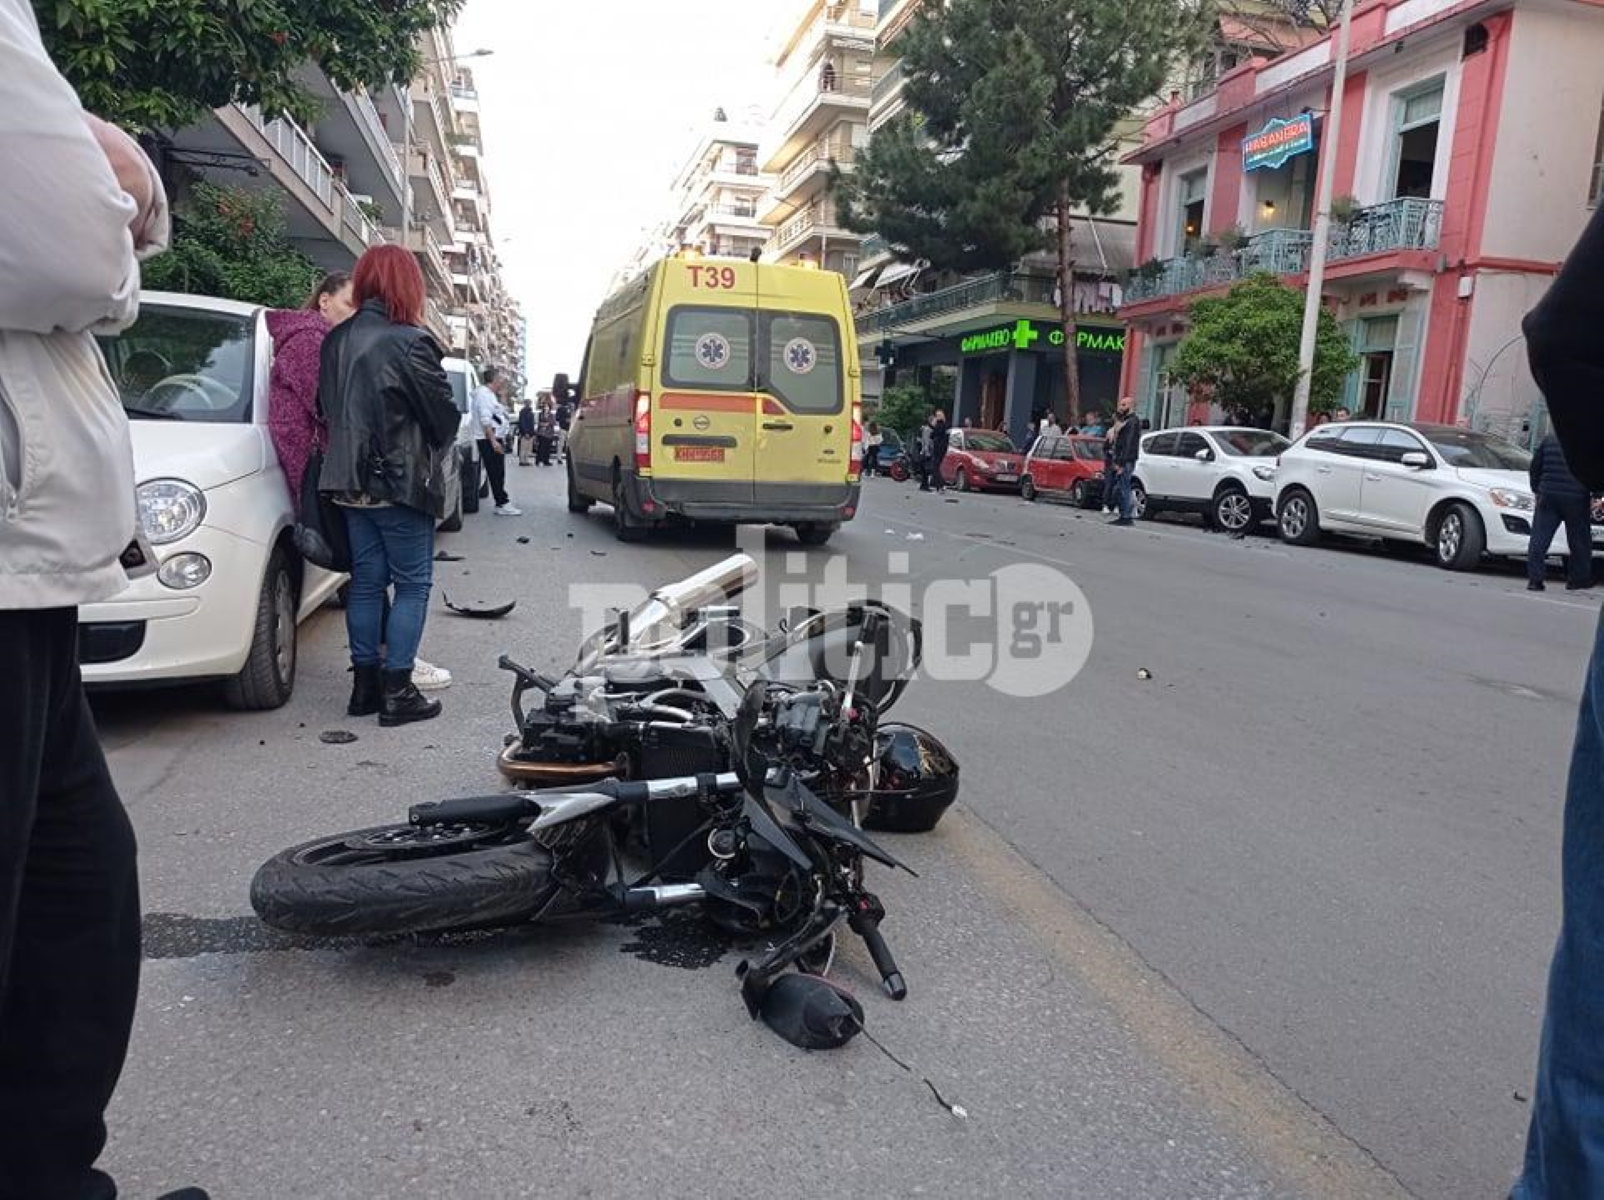 Θεσσαλονίκη: Σοβαρό τροχαίο με μηχανή – Σε κρίσιμη κατάσταση ένας άνδρας